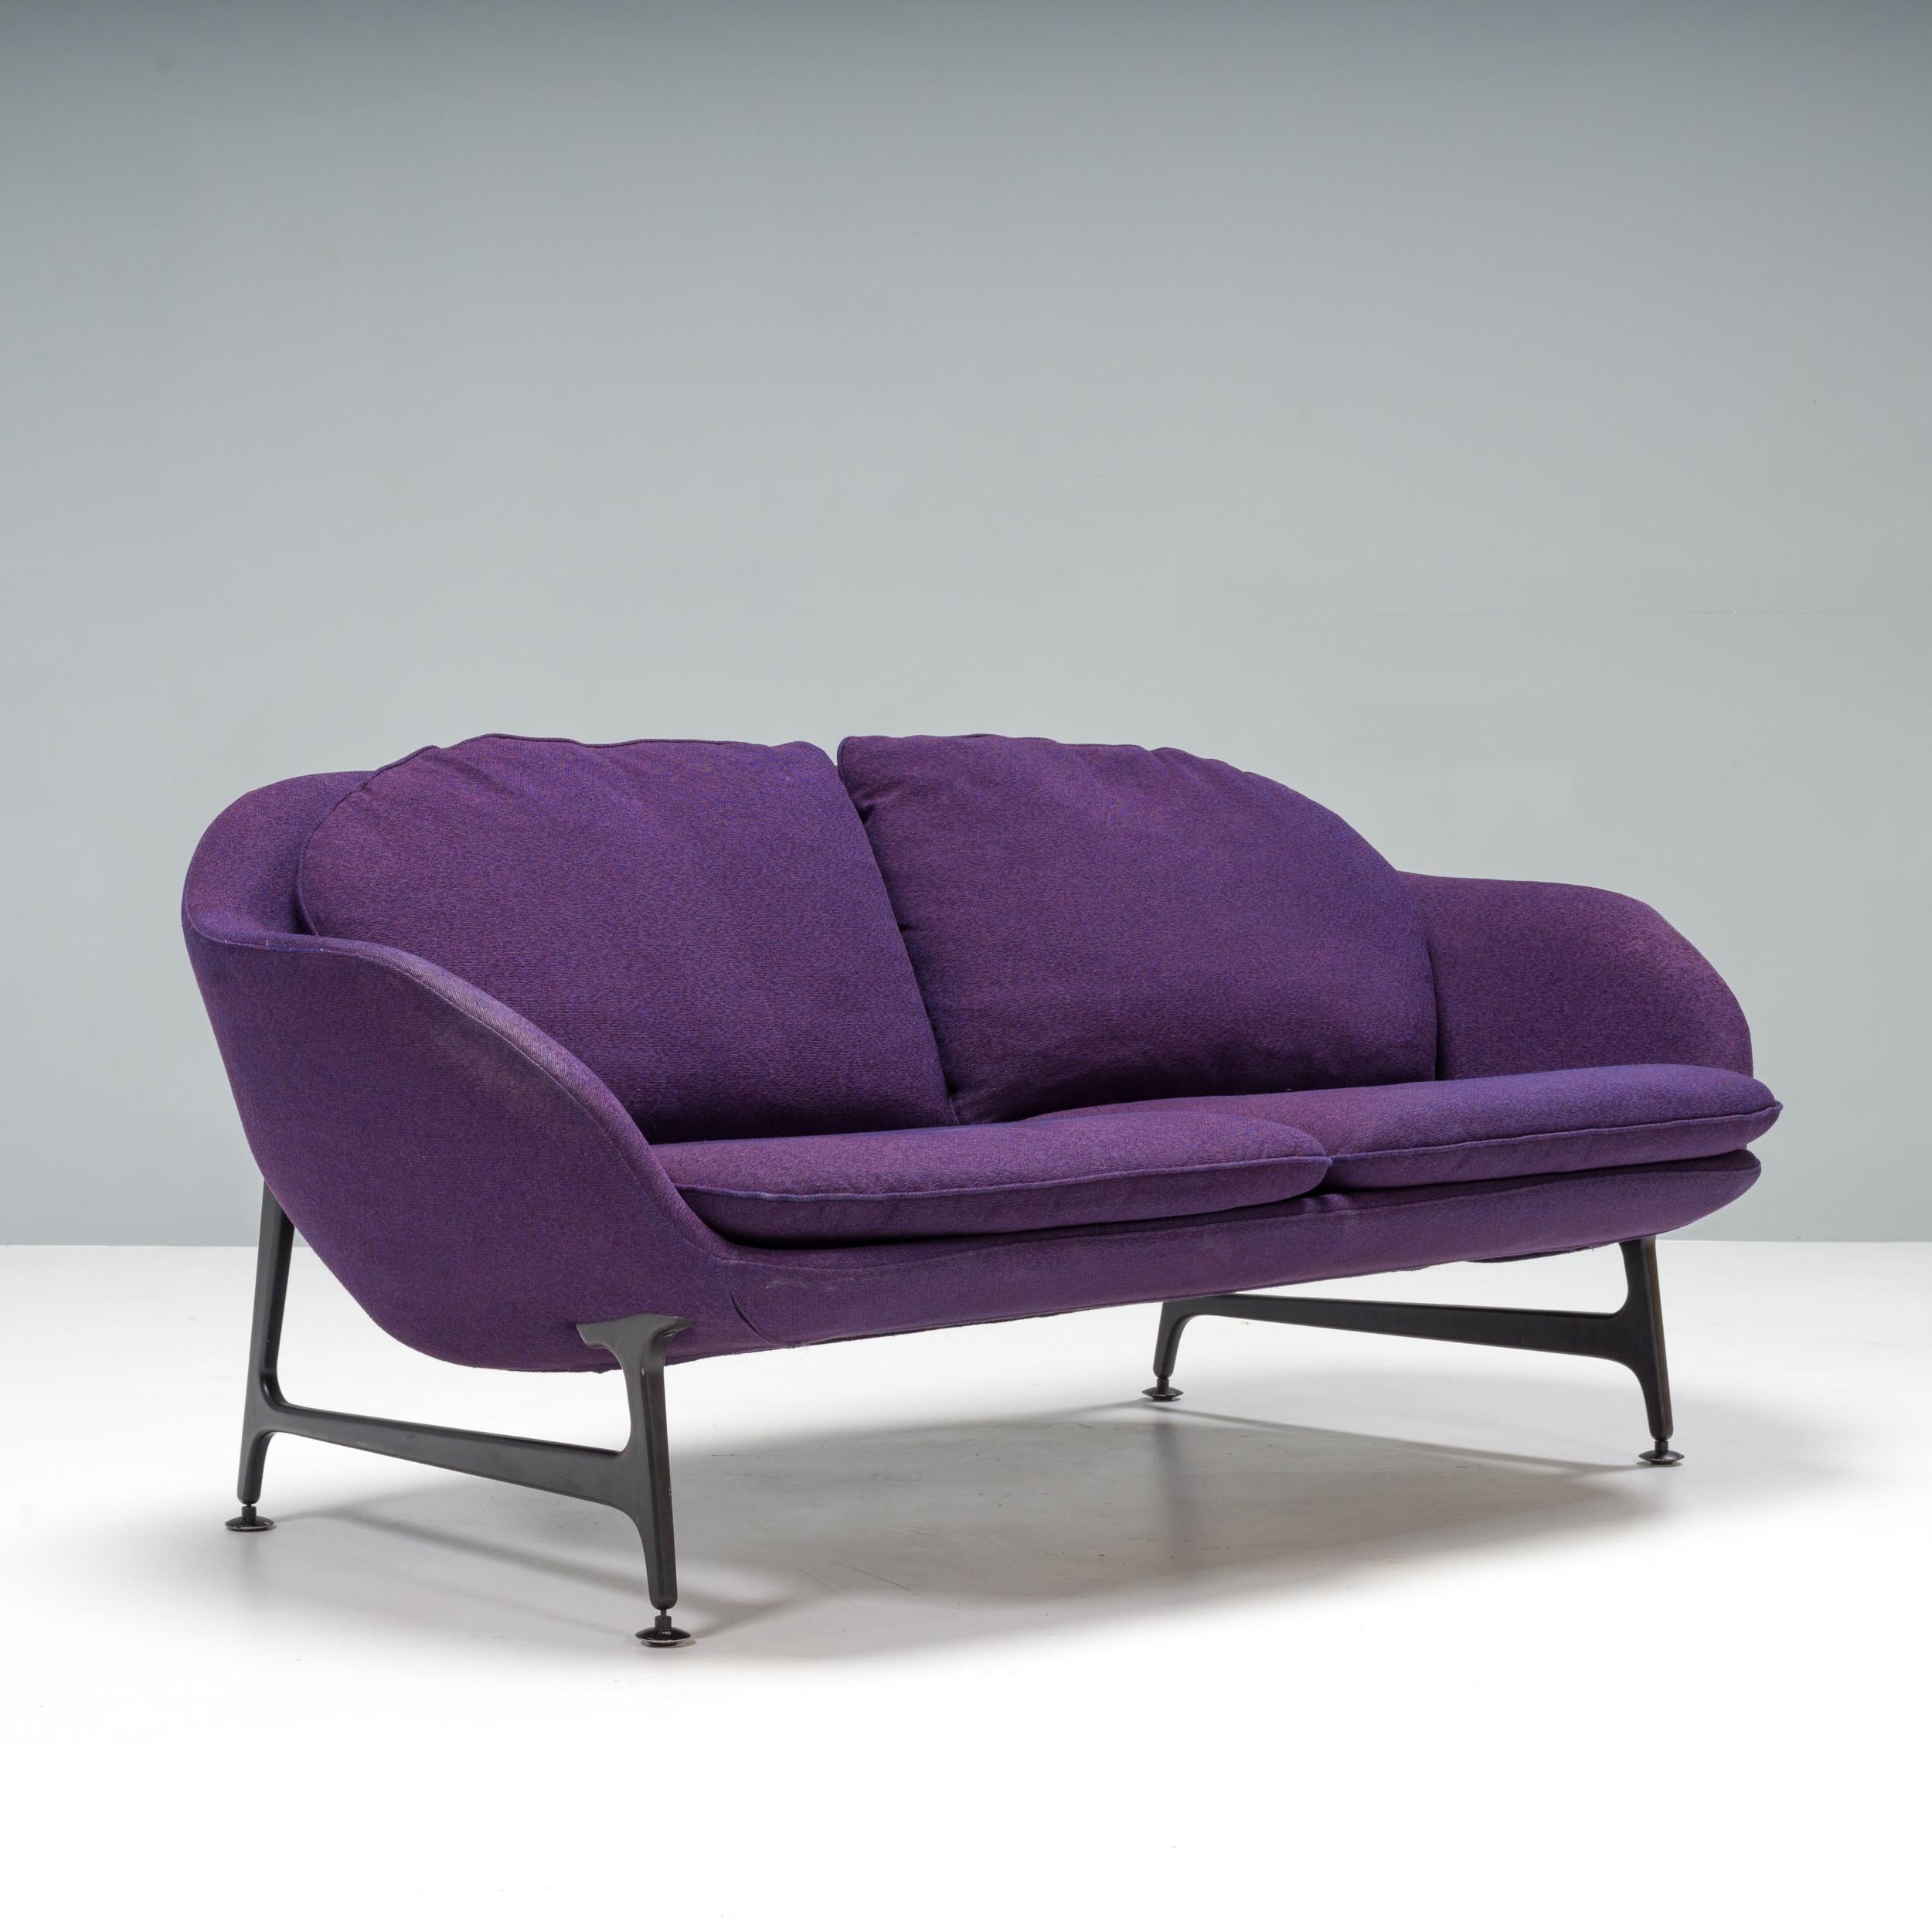 Présentée pour la première fois au Salone del Mobile en 2014, la collection de sièges Vico a été conçue par Jaime Hayon pour Cassina et baptisée du nom de son fils.

Inspiré par les archives de Cassina, le design de Hayon pour Vico est un